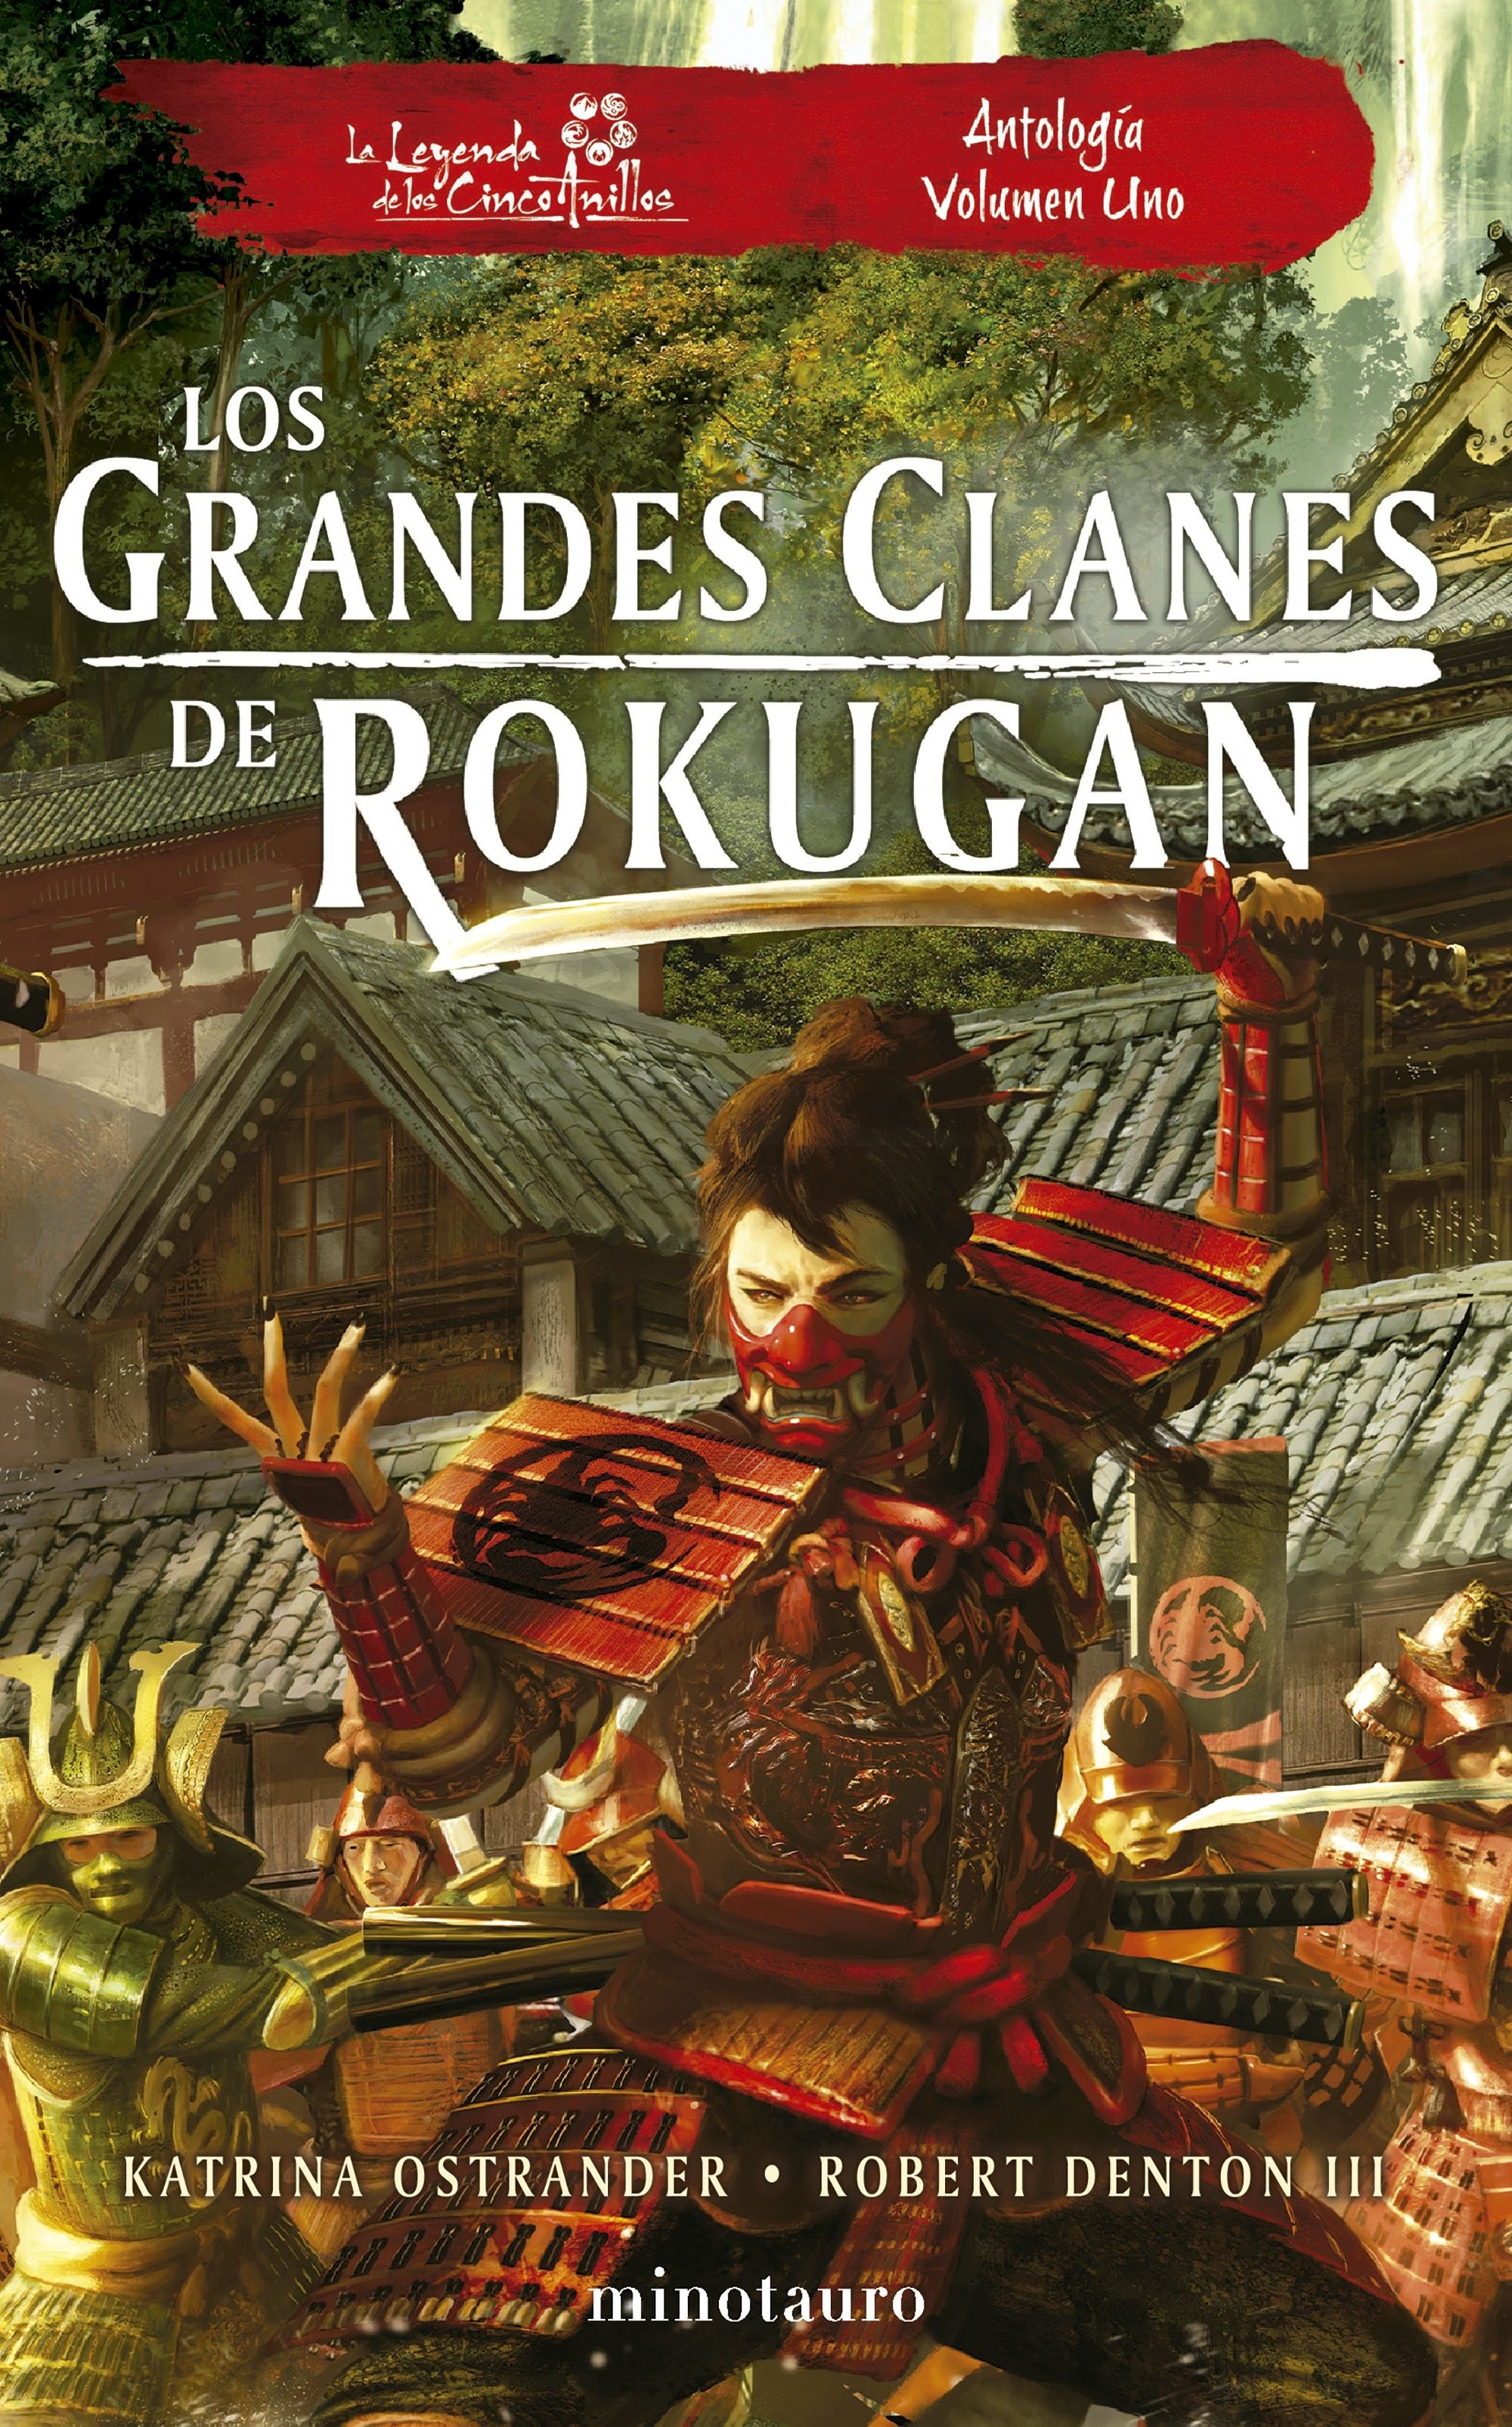 Los grandes clanes de Rokugan. Antología volumen uno